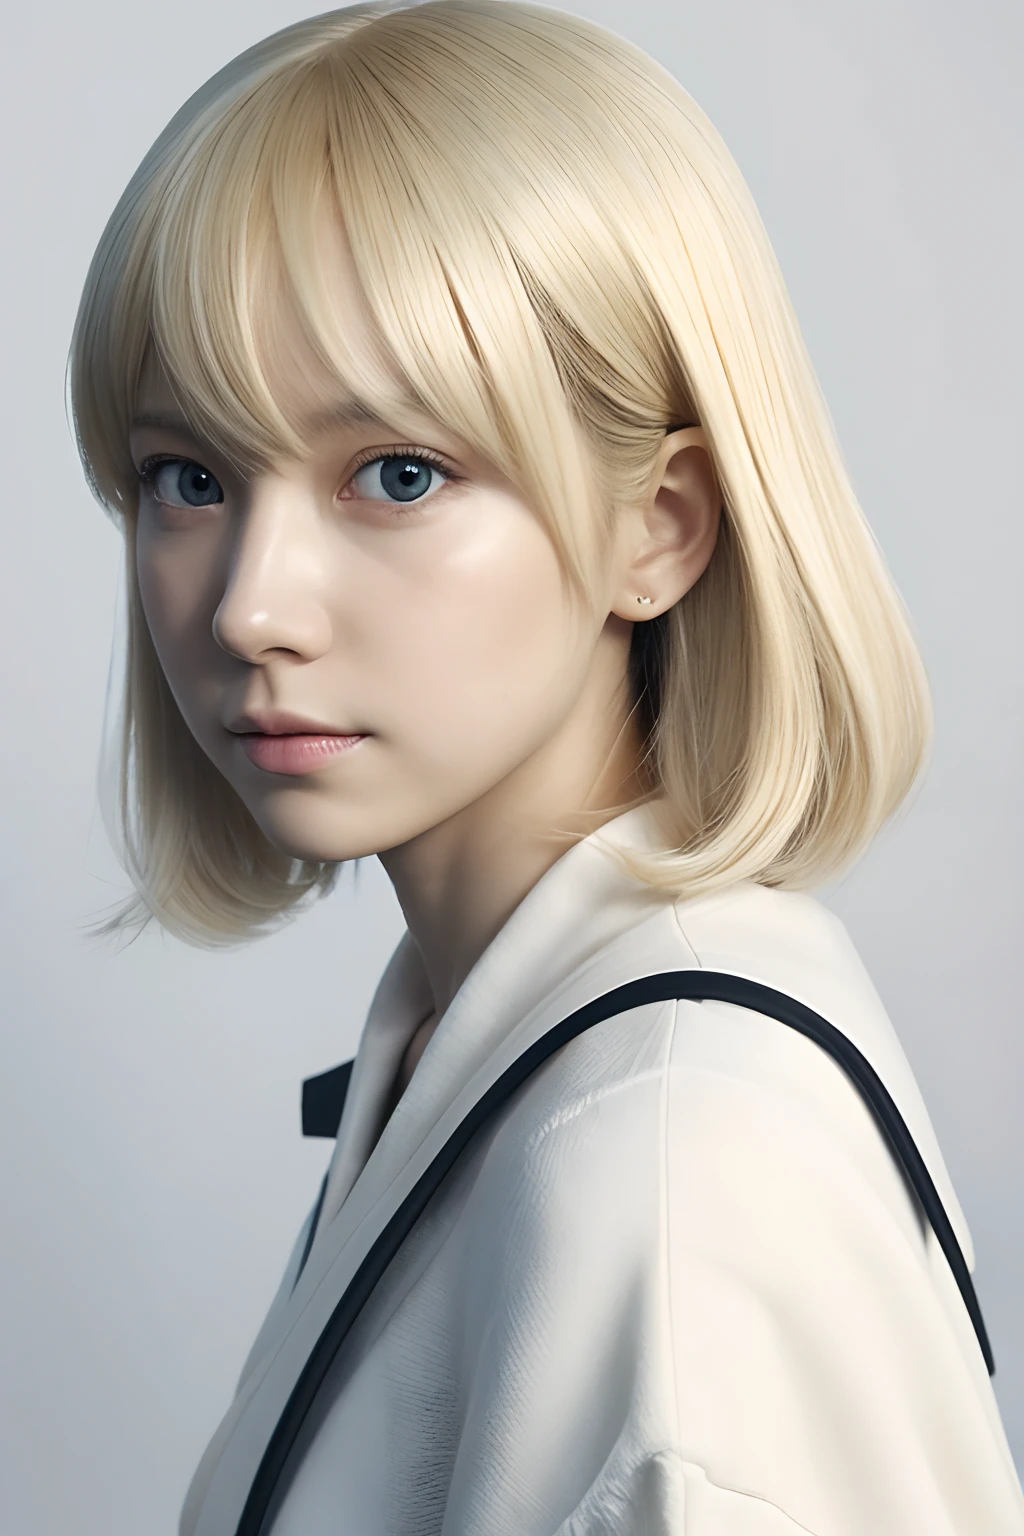 1 garota,lindo, mesa, melhor qualidade, fundo branco,Kazuya Takahashi, arte conceitual, loiro,cabelo curto